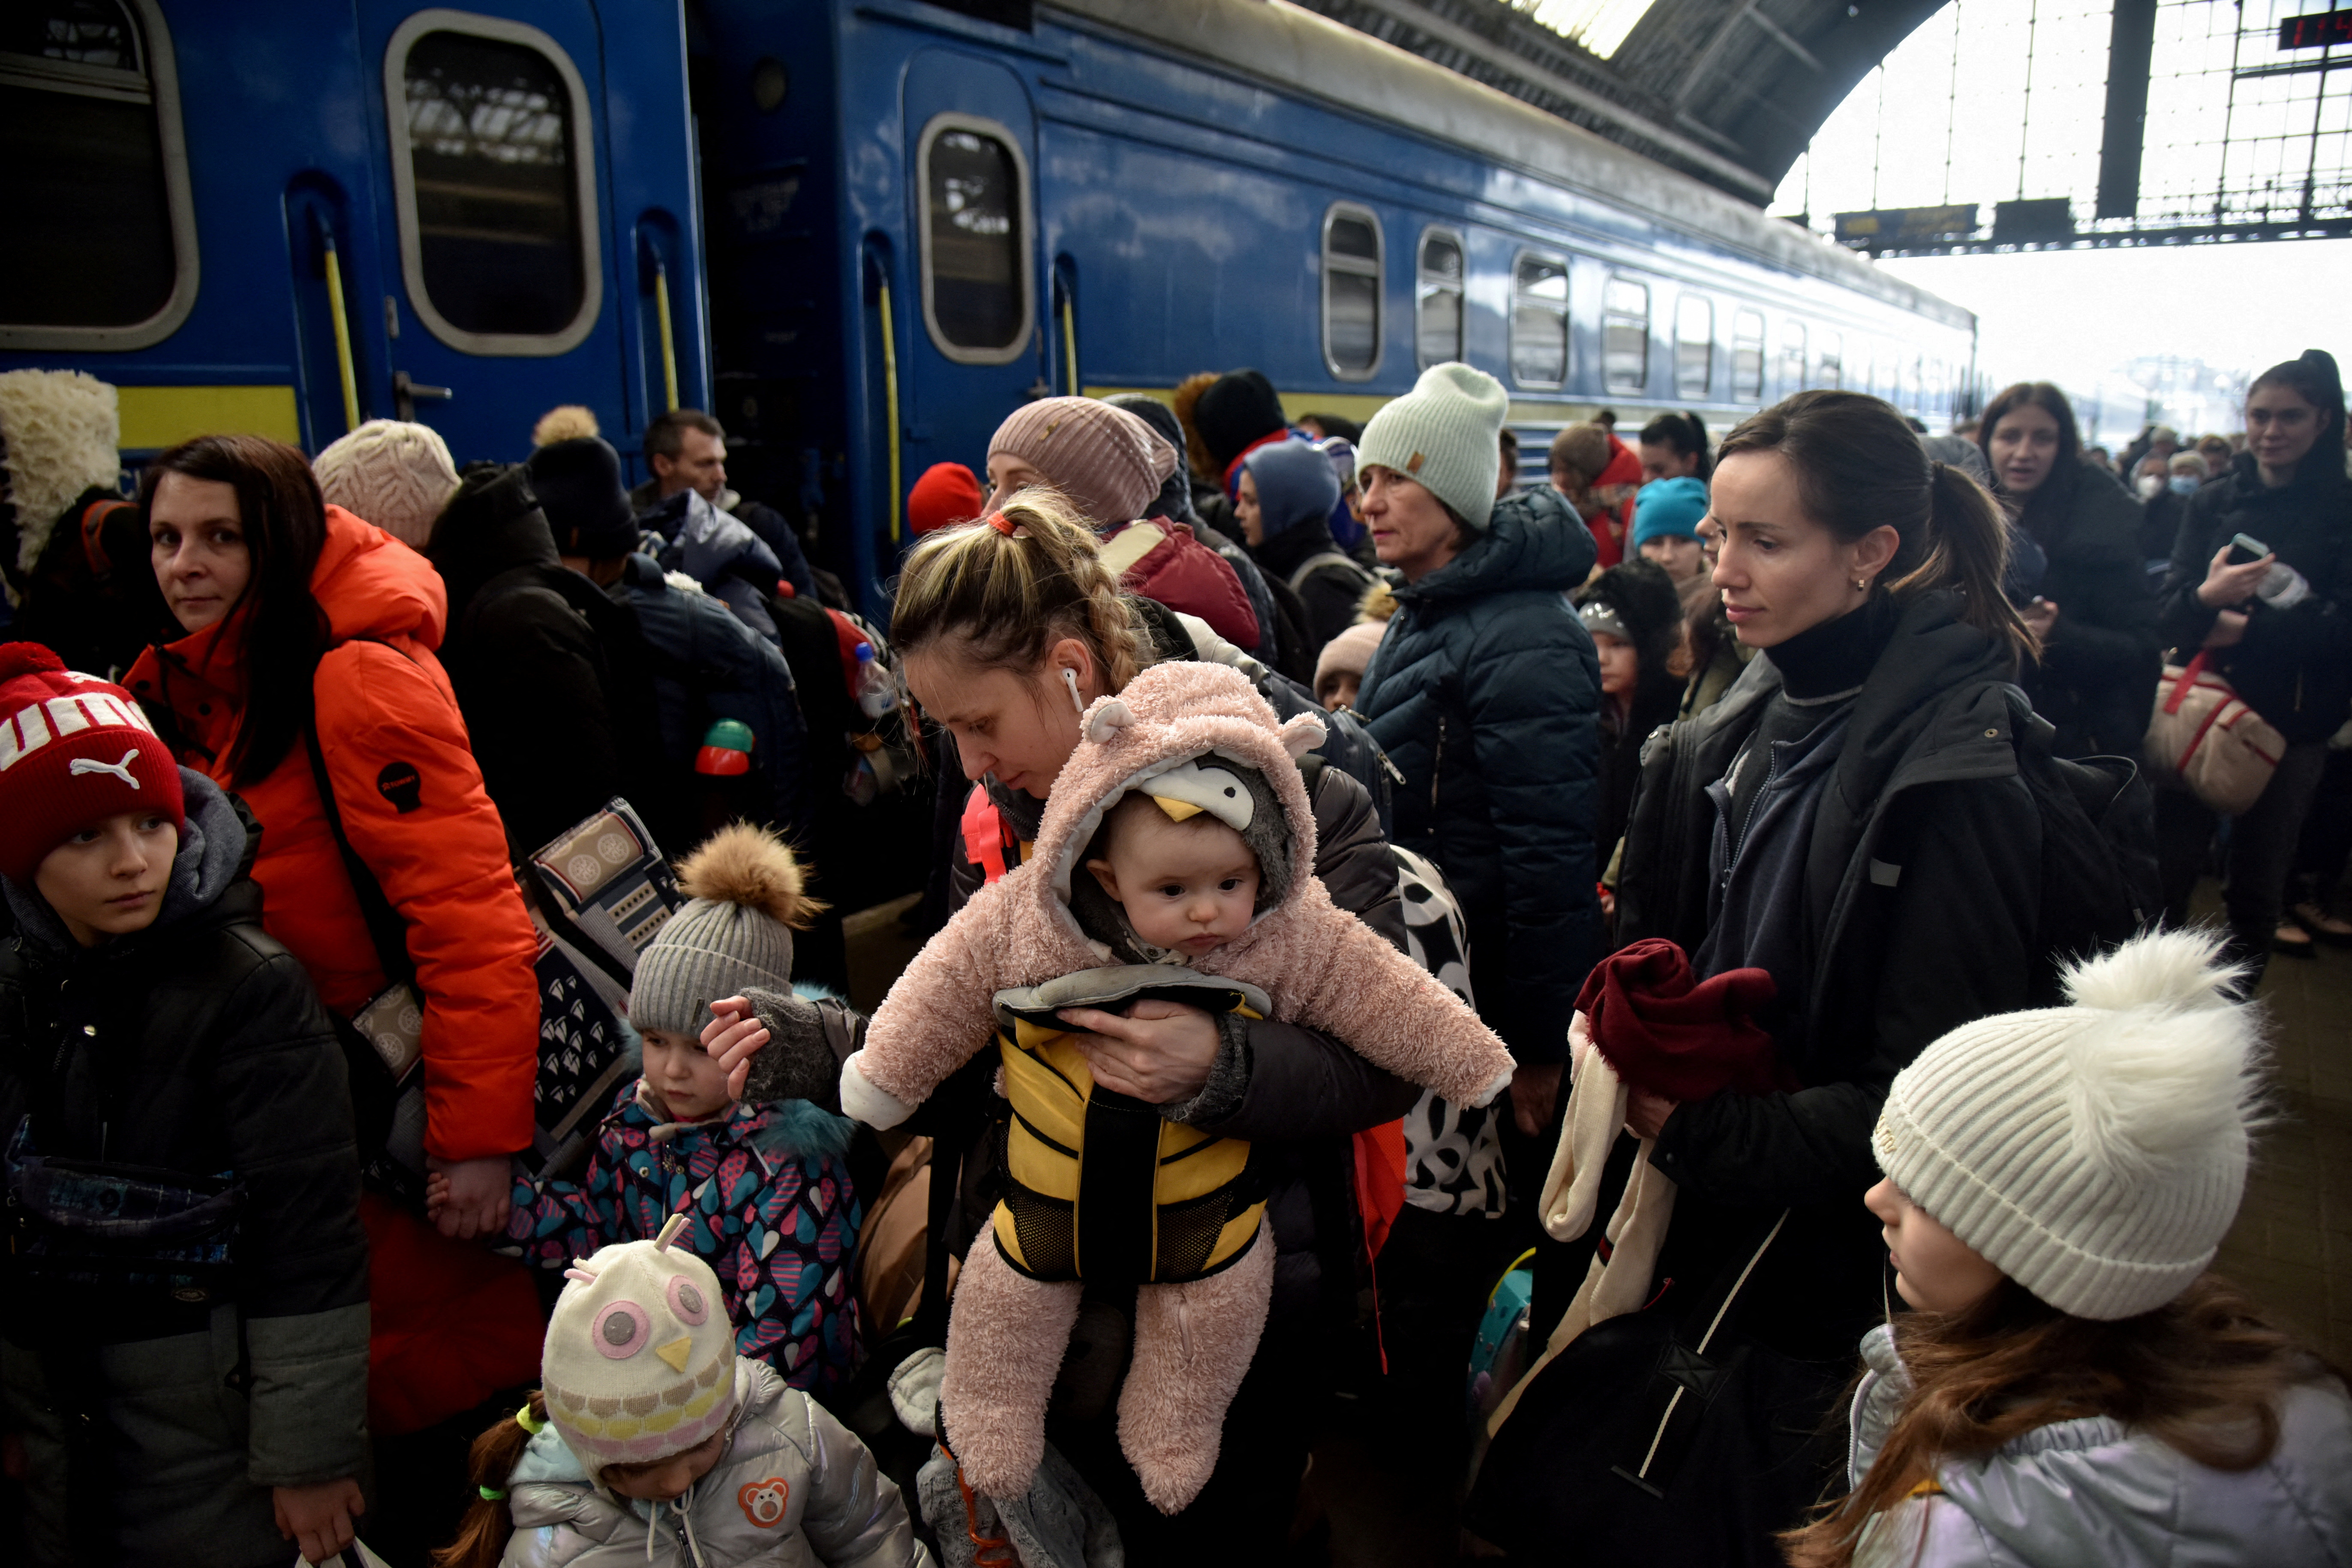 FOTO DE ARCHIVO: Personas que huyen de la invasión rusa de Ucrania se reúnen en la estación de tren de Lviv, Ucrania, el 9 de marzo de 2022. REUTERS/Pavlo Palamarchuk